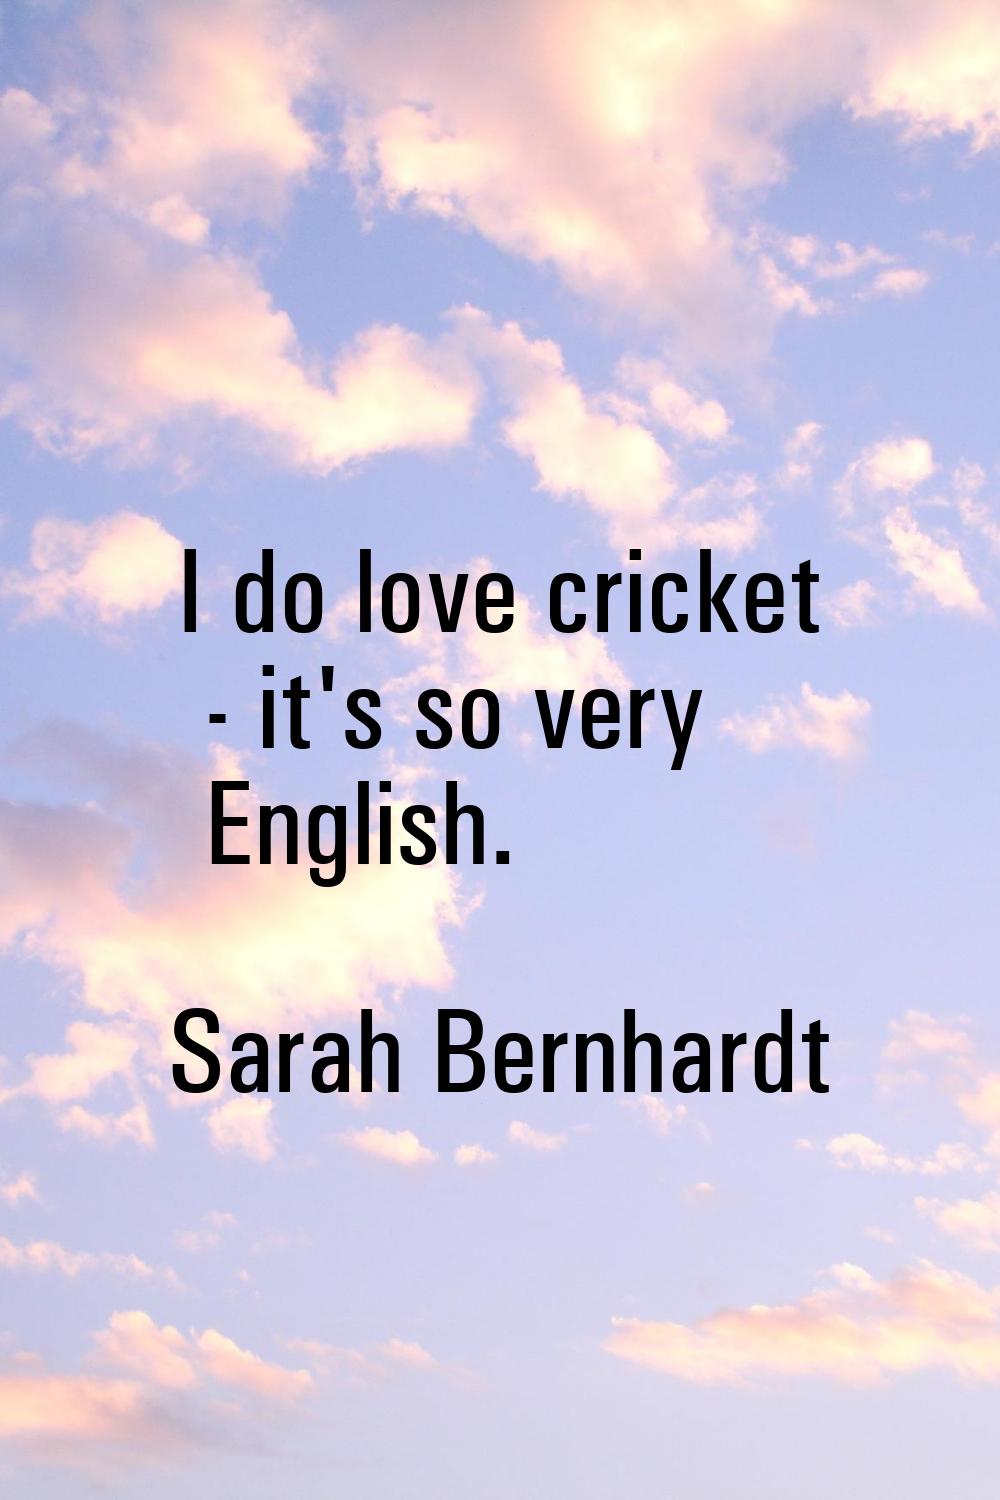 I do love cricket - it's so very English.